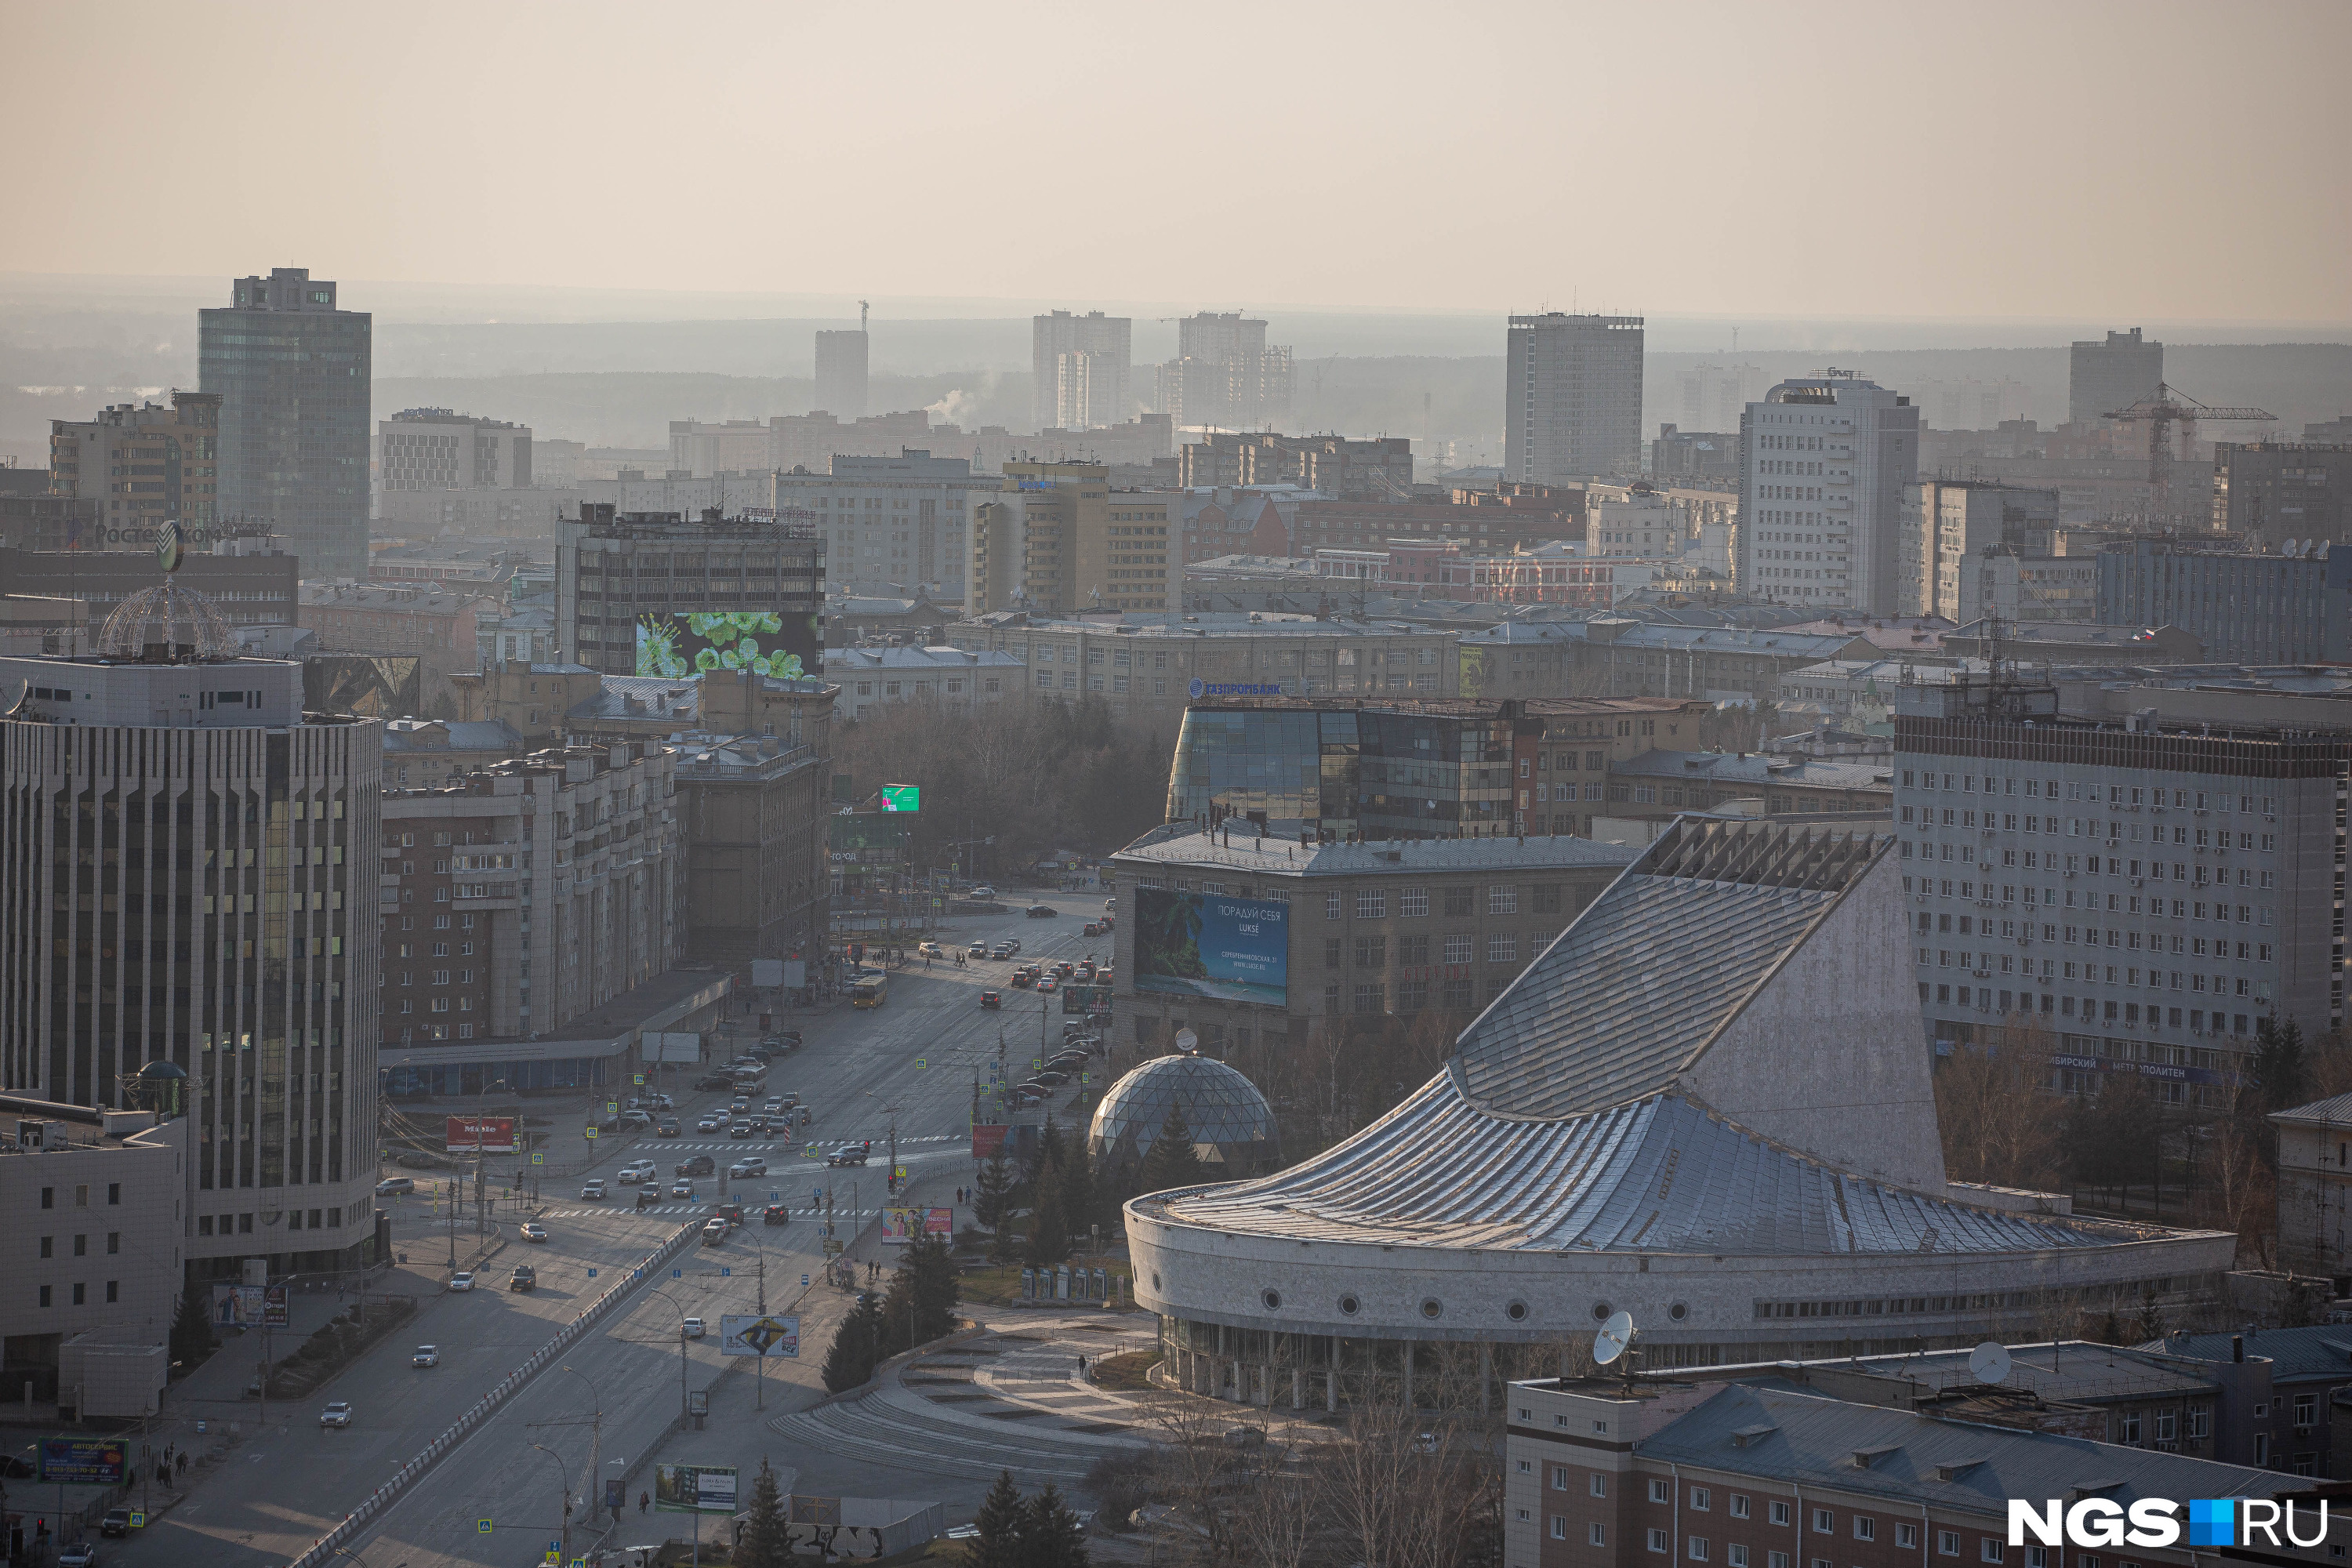 Из-за пыли в воздухе в городе некомфортно находиться — это часто отмечают гости Новосибирска